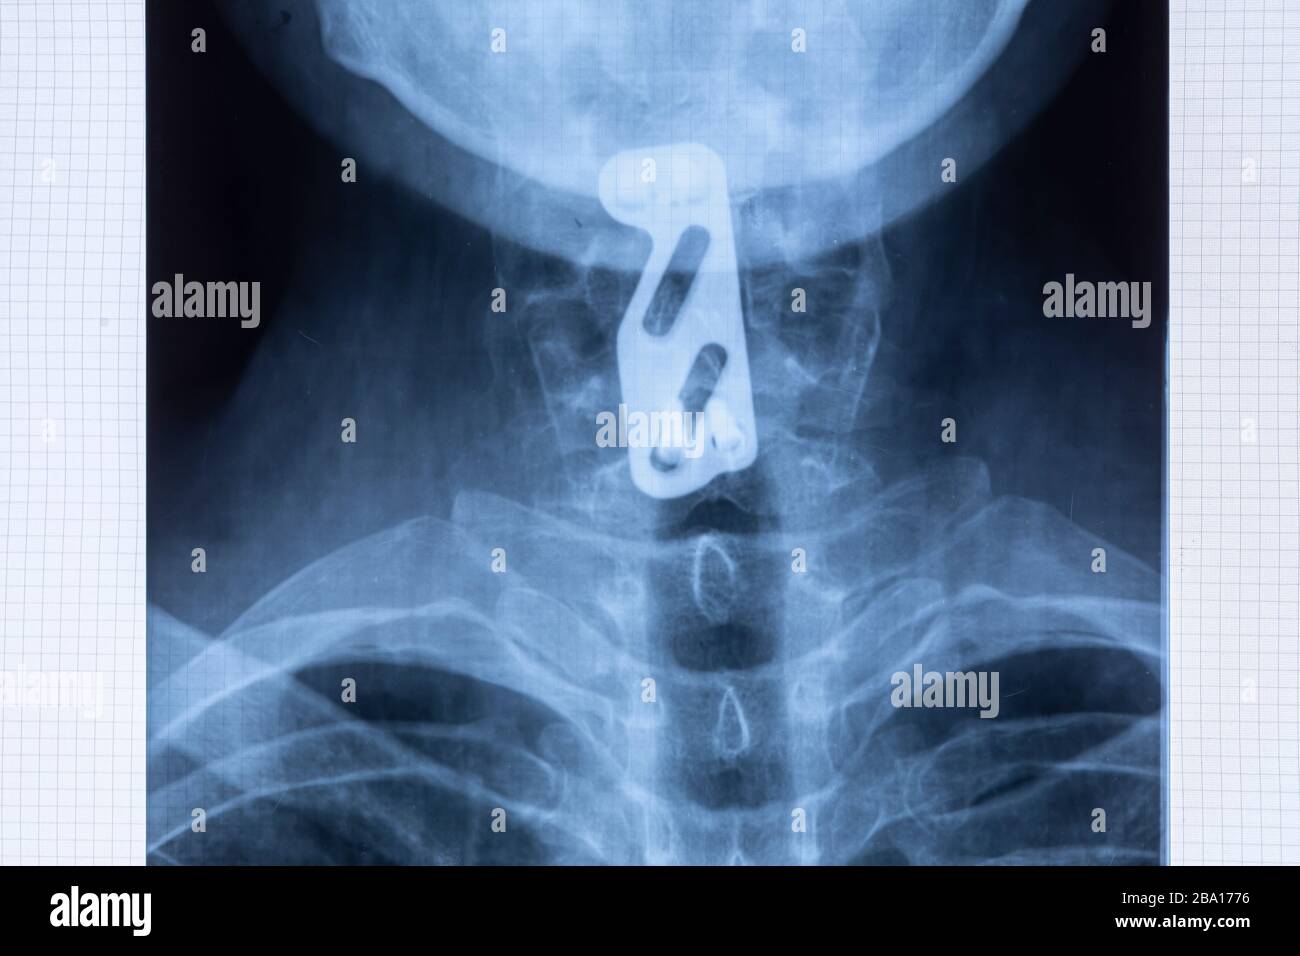 Radiografia del fissaggio della piastra in titanio per sostenere la colonna cervicale dopo lesioni alle vertebre C5 e C6. Fornire stabilità al collo utilizzando la strumentazione spinale Foto Stock